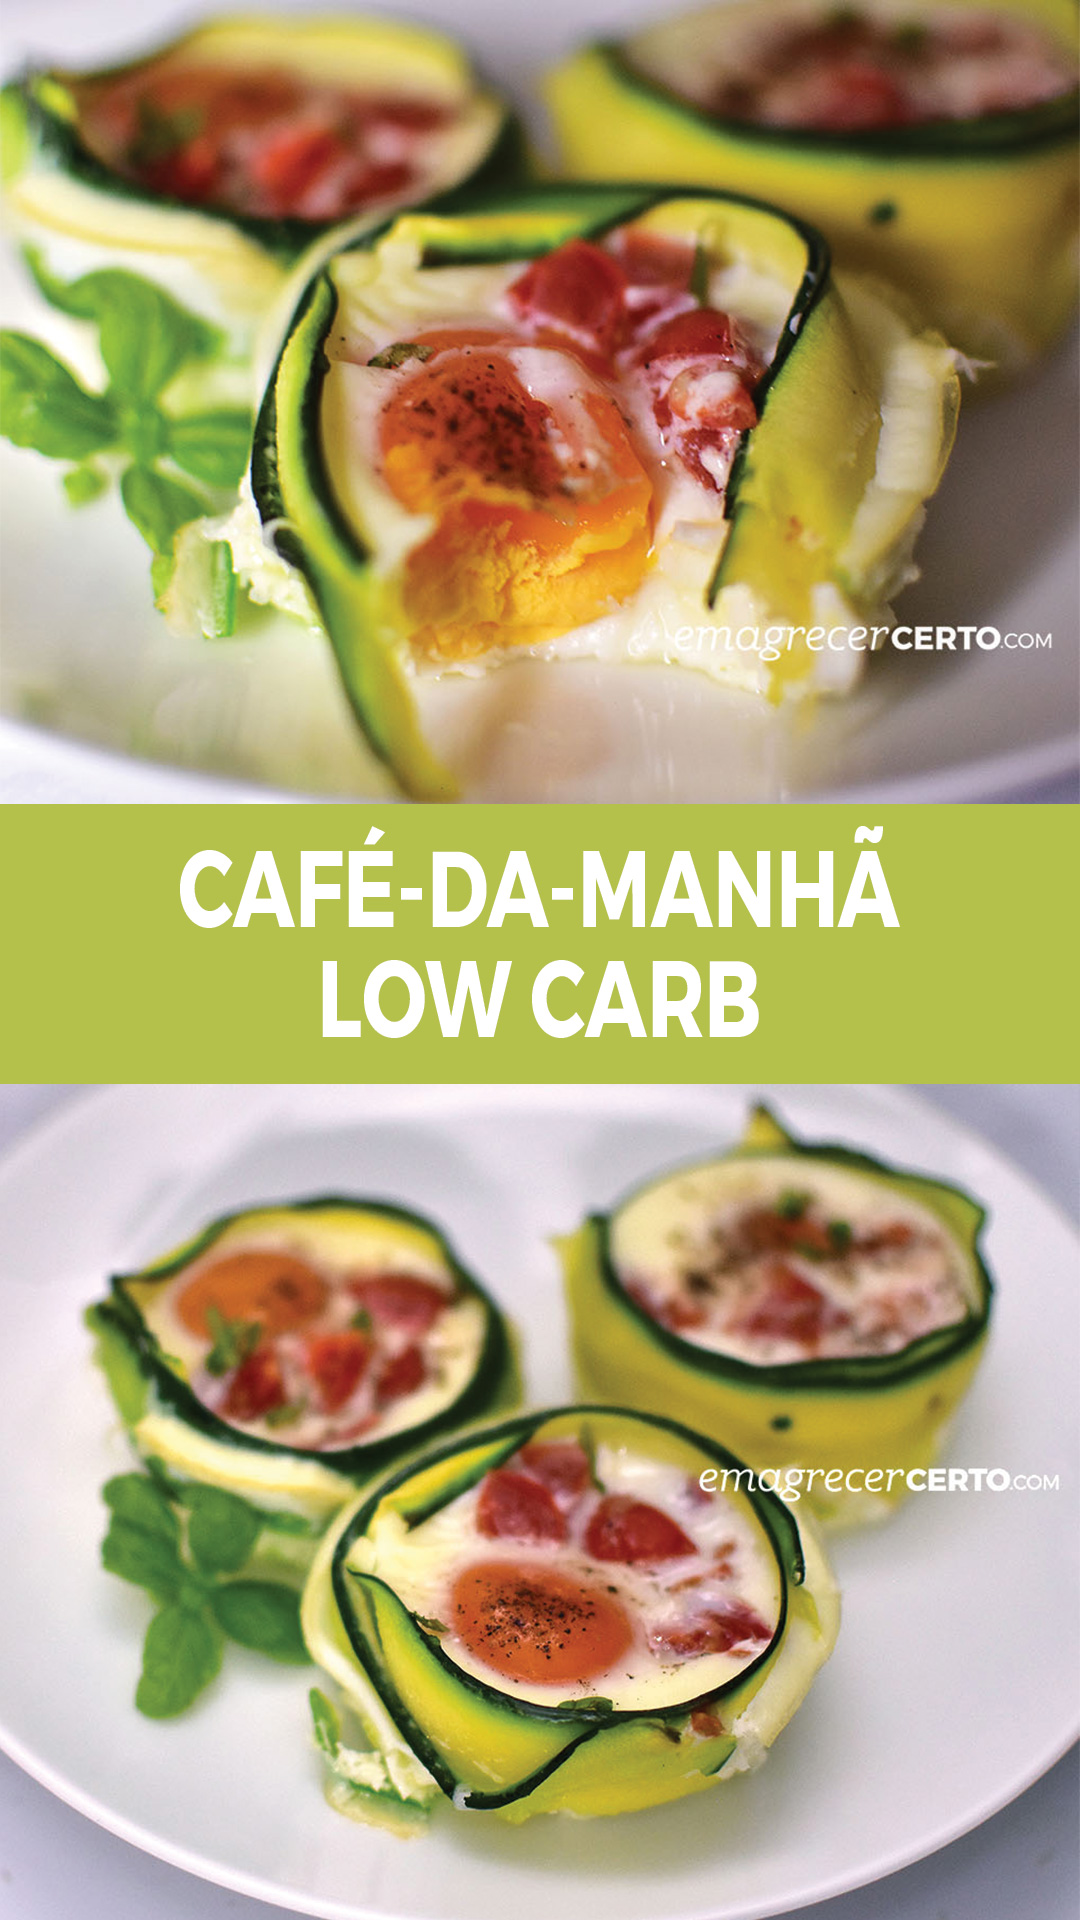 Café da manhã low carb | Cestinha de ovos | Blog Emagrecer Certo